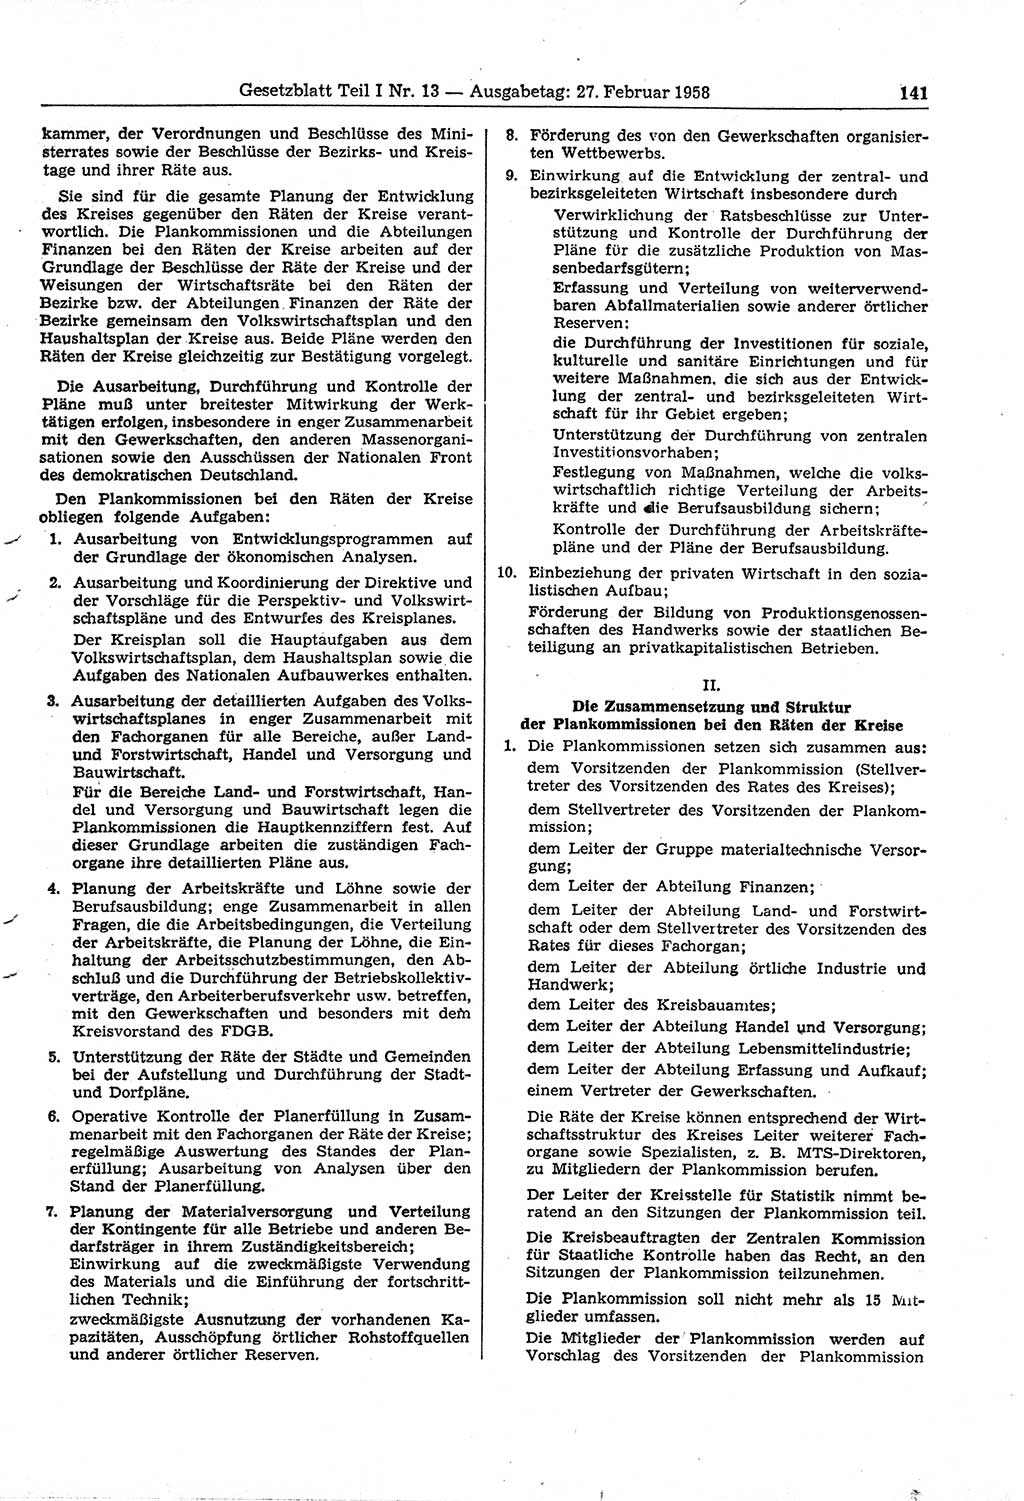 Gesetzblatt (GBl.) der Deutschen Demokratischen Republik (DDR) Teil Ⅰ 1958, Seite 141 (GBl. DDR Ⅰ 1958, S. 141)